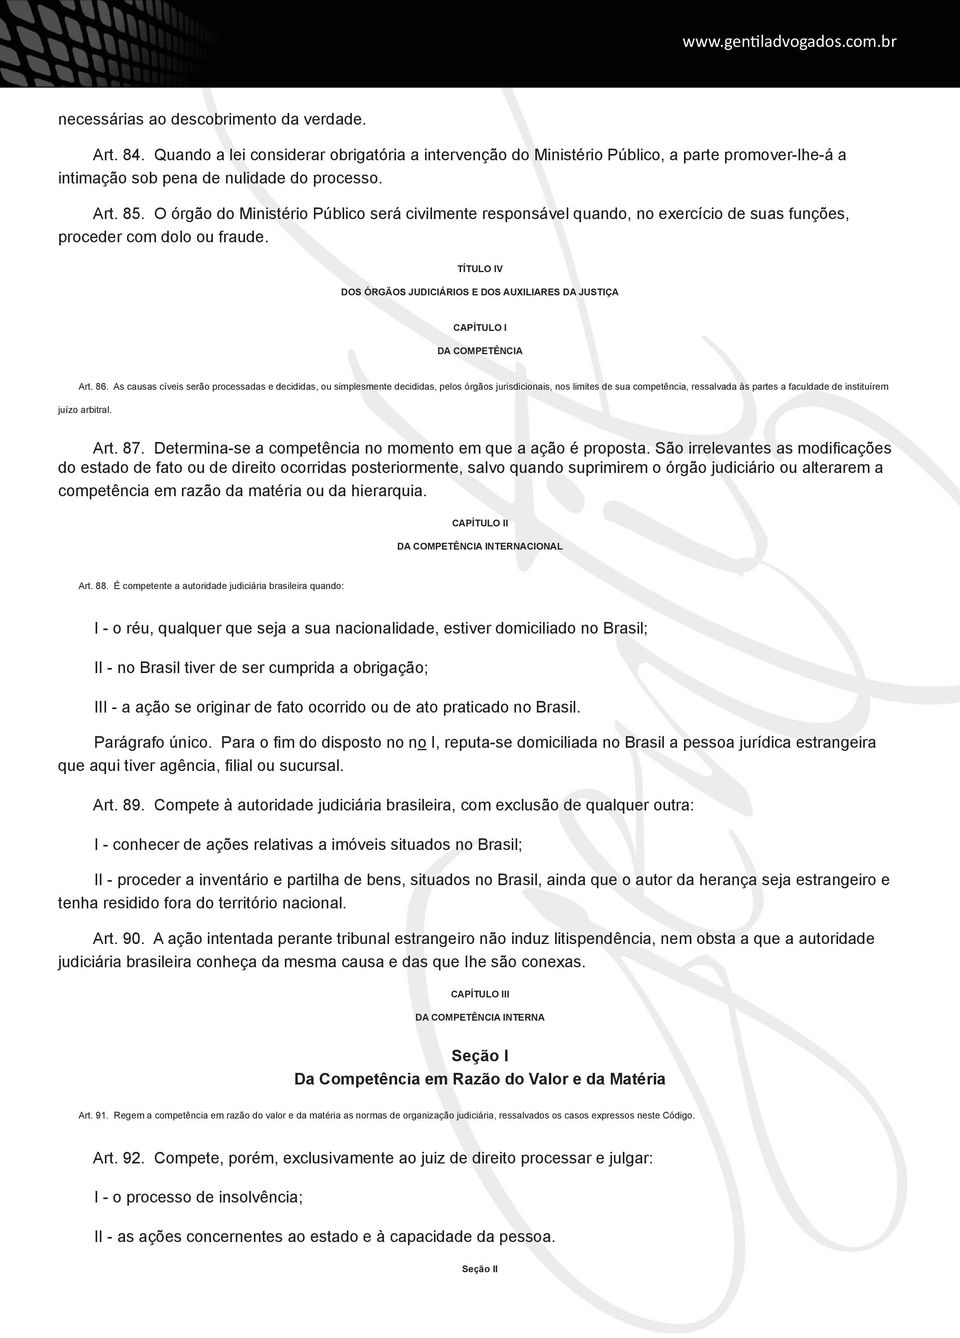 TÍTULO IV DOS ÓRGÃOS JUDICIÁRIOS E DOS AUXILIARES DA JUSTIÇA CAPÍTULO I DA COMPETÊNCIA Art. 86.